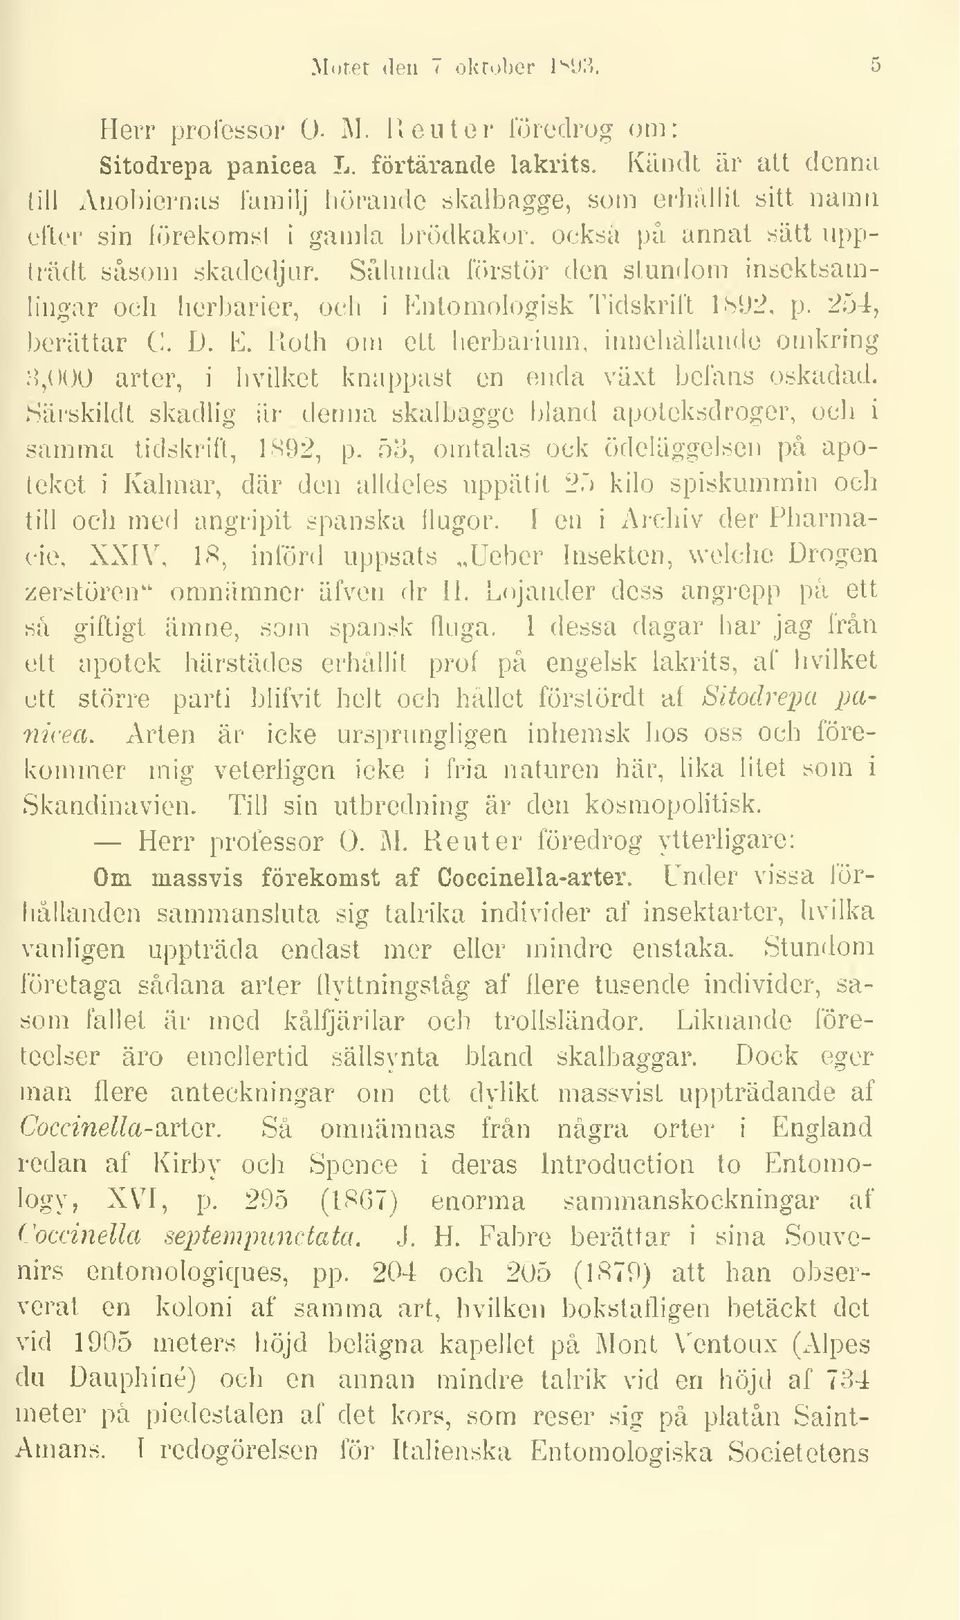 Sålunda förstör den stundom insektsamlingar och herbarier, och i Entomologisk Tidskrift 1892, p. 254, berättar C. D. E. Roth om ett herbarium, innehållande omkring i 8,000 arter, hvilket knappast en enda växt befans oskadad.